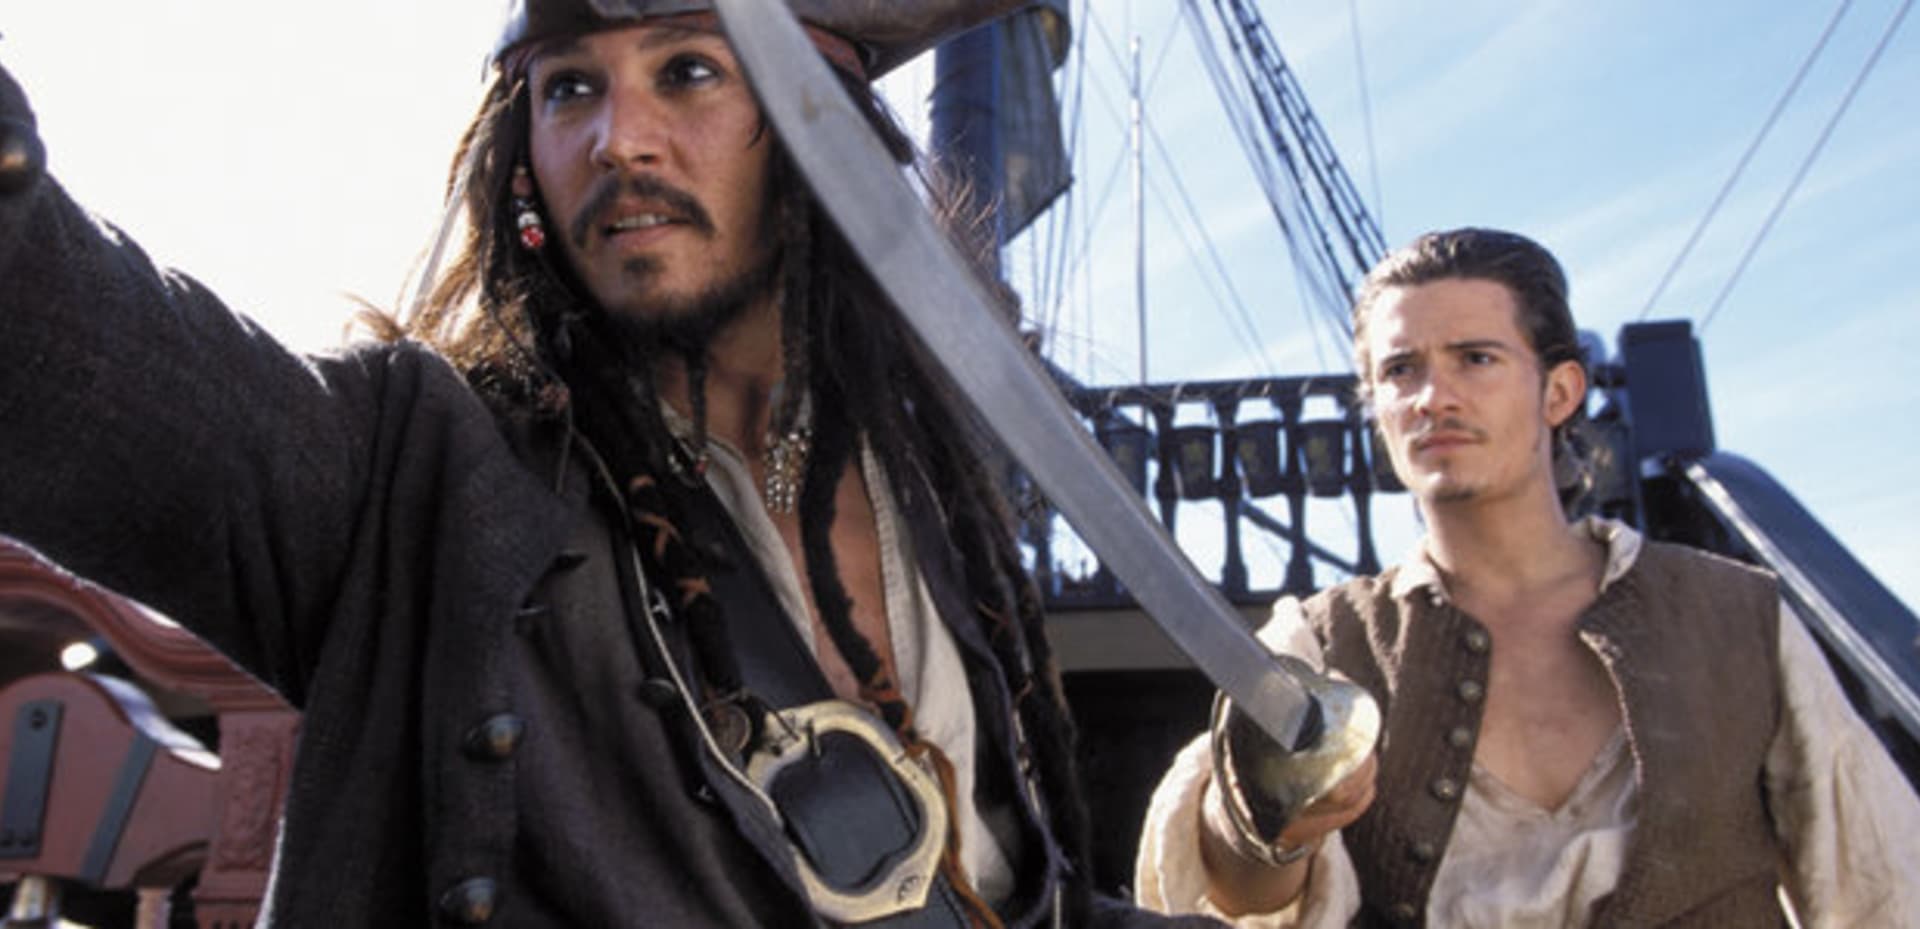 Piráti z Karibiku Johnny Depp a Orlando Bloom